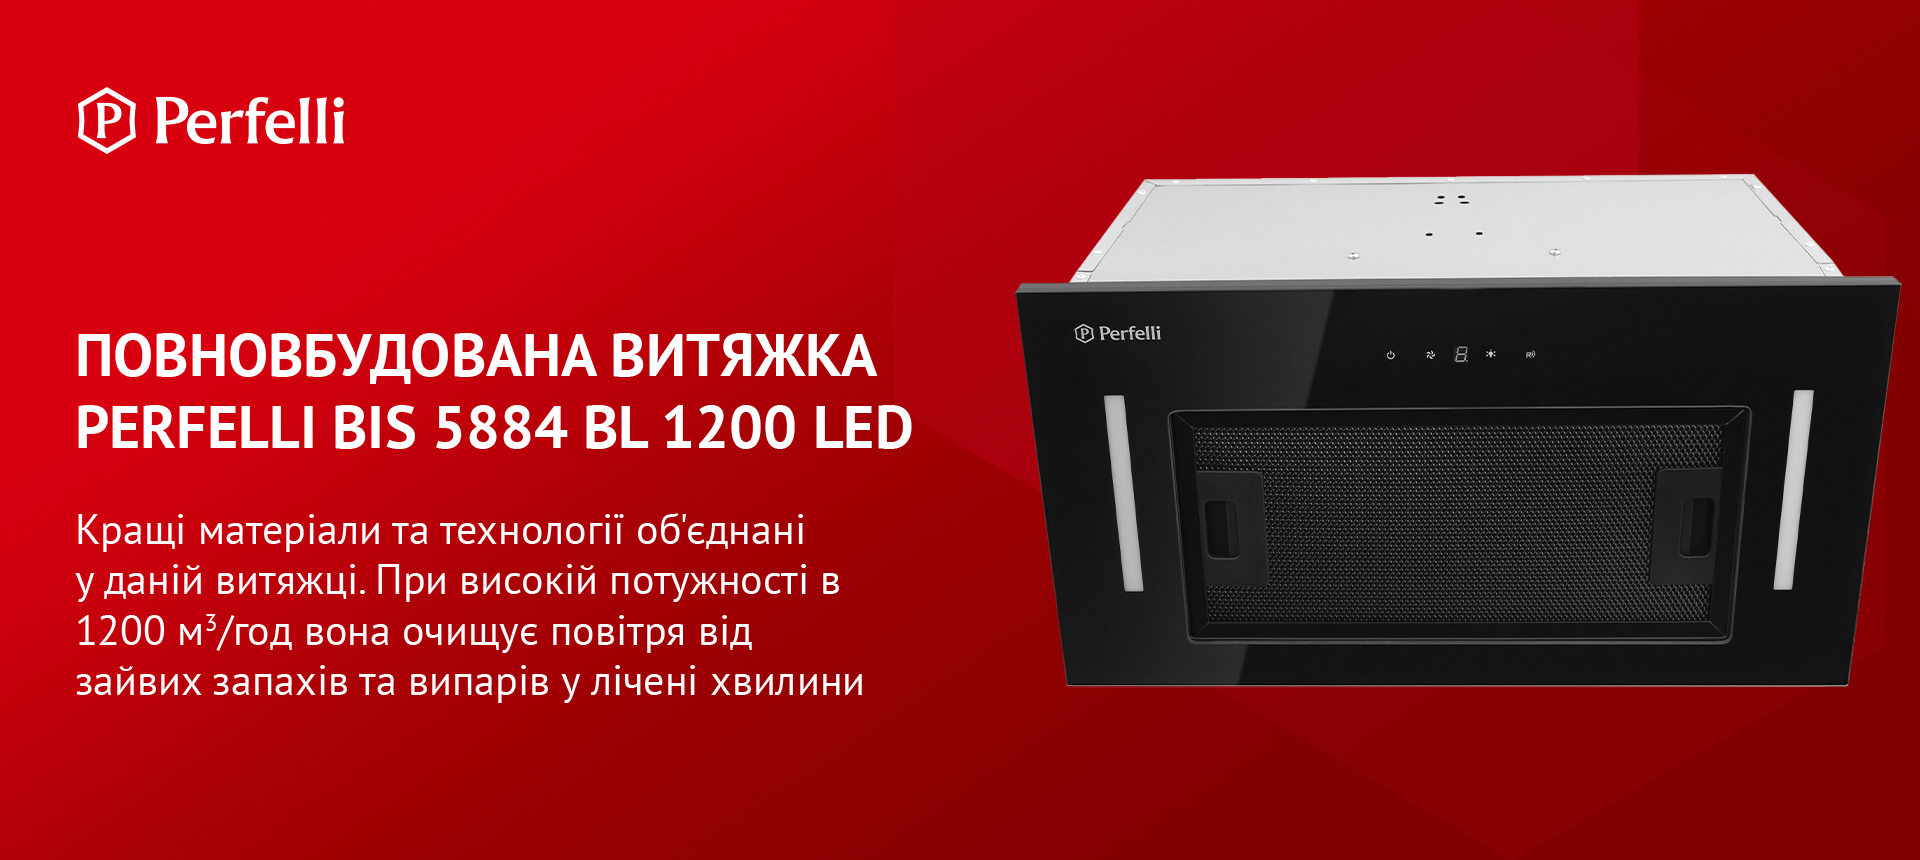 Perfelli BIS 5884 BL 1200 LED в магазине в Киеве - фото 10